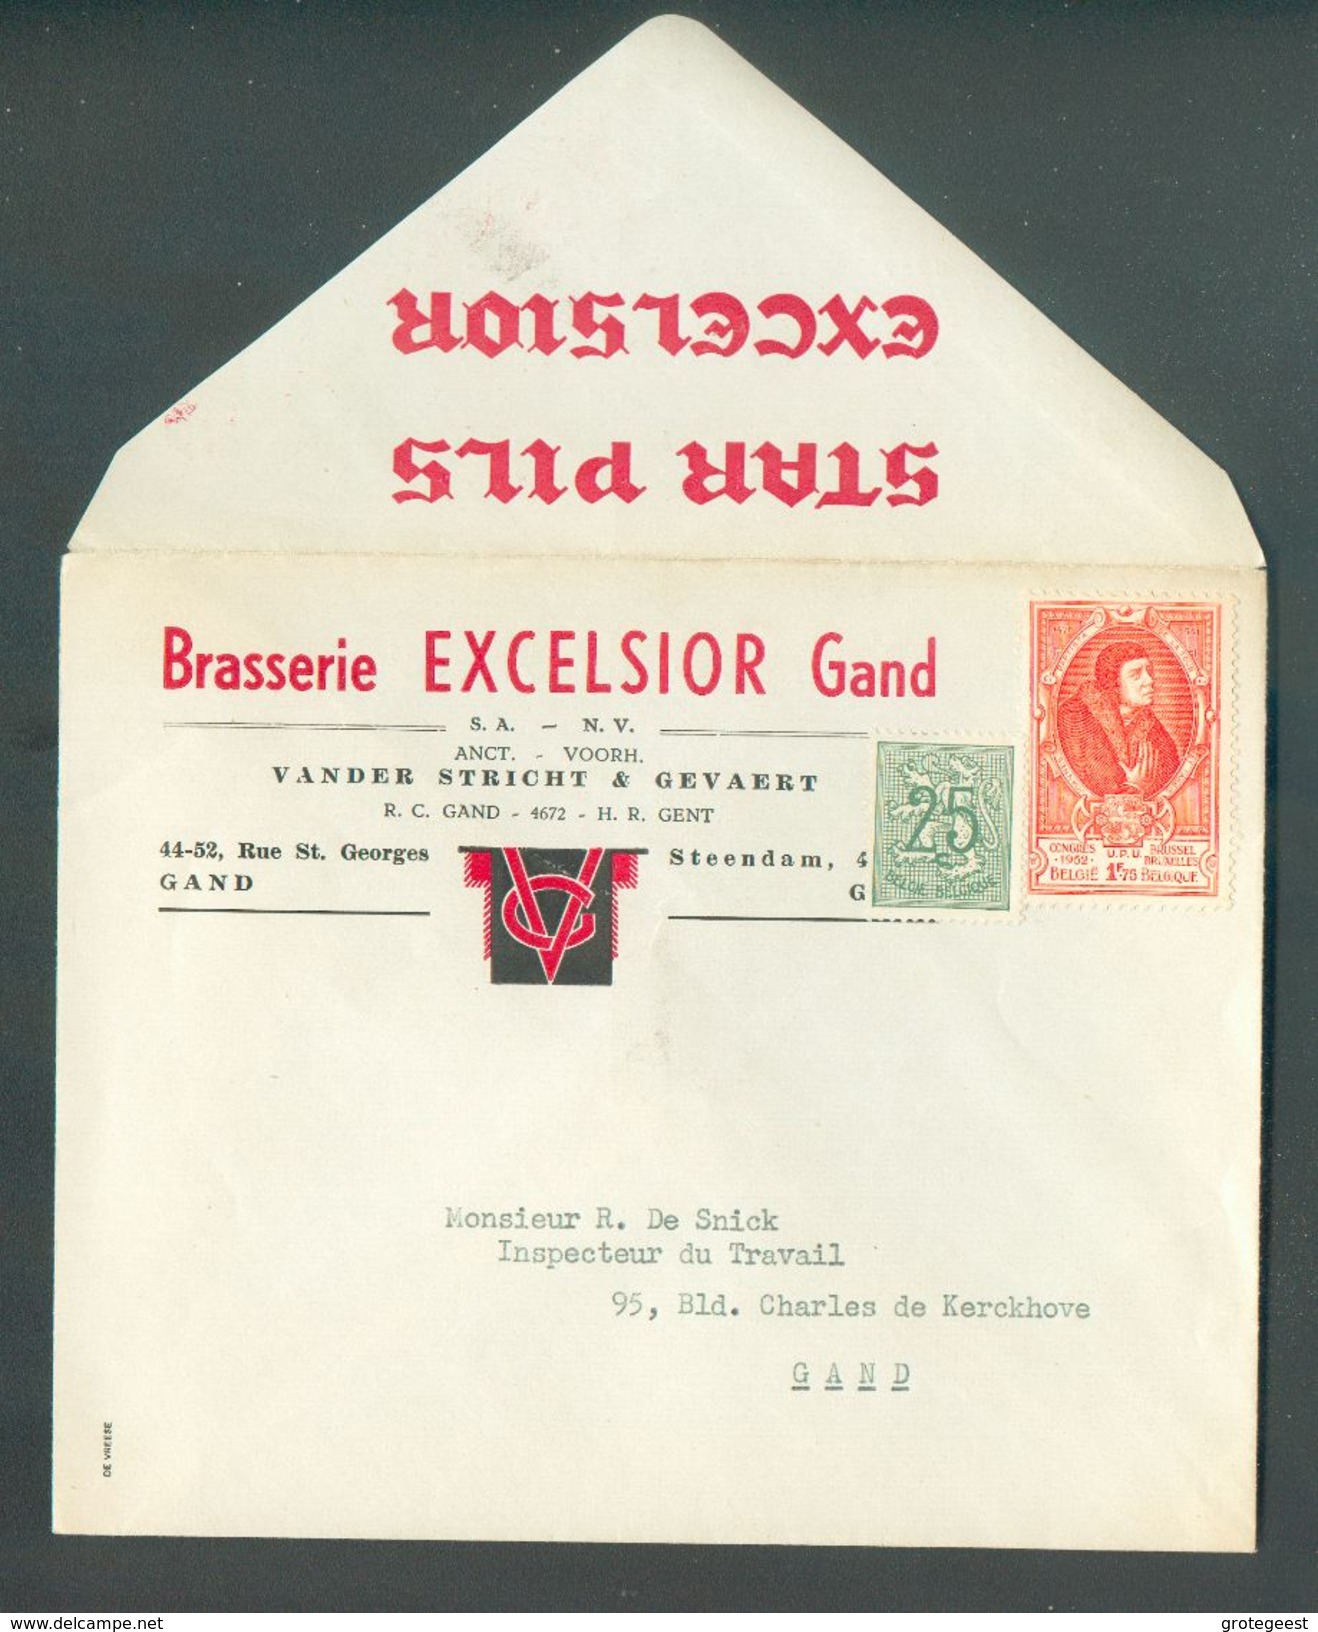 BELGIQUE Enveloppe En Tête BRASERIE EXCELSSIOR GAND (affr.UPU) Fond. Vander Stricht & Gevaert - 12171 - Birre